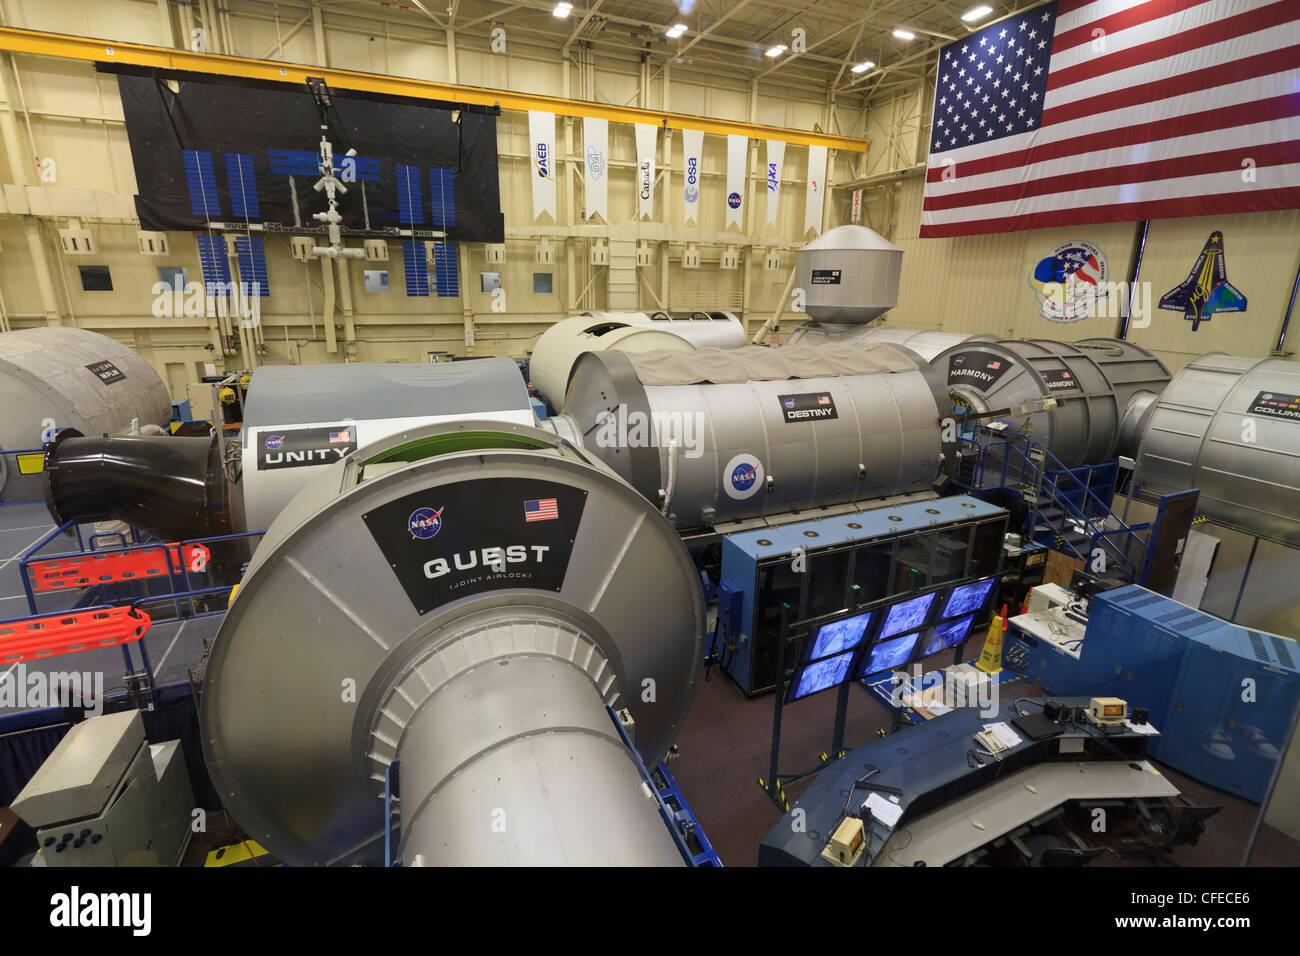 Réplique grandeur nature de la Station spatiale internationale lors de l'installation immersive du véhicule spatial, Johnson Space Center, au Texas. Banque D'Images